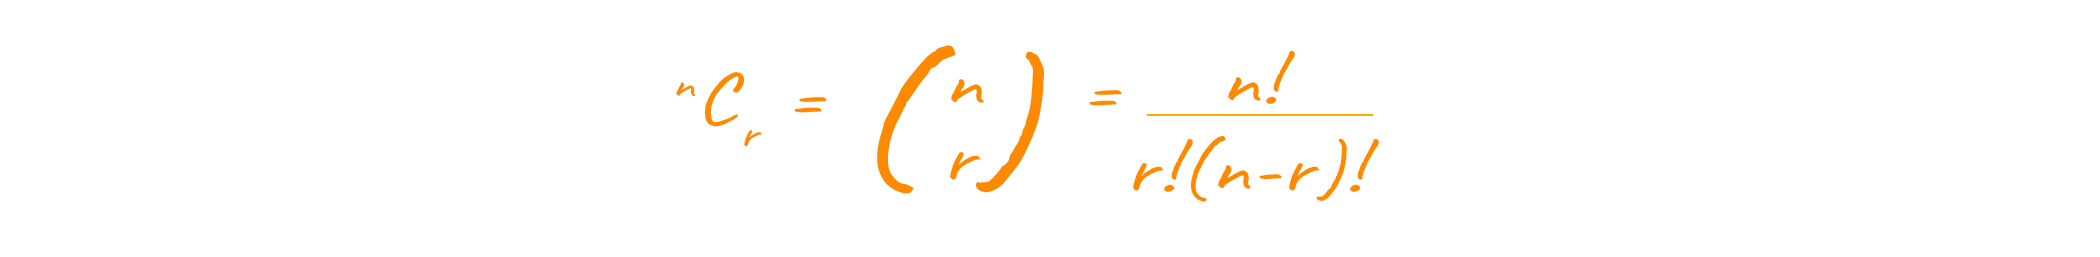 Pascal's triangle formula